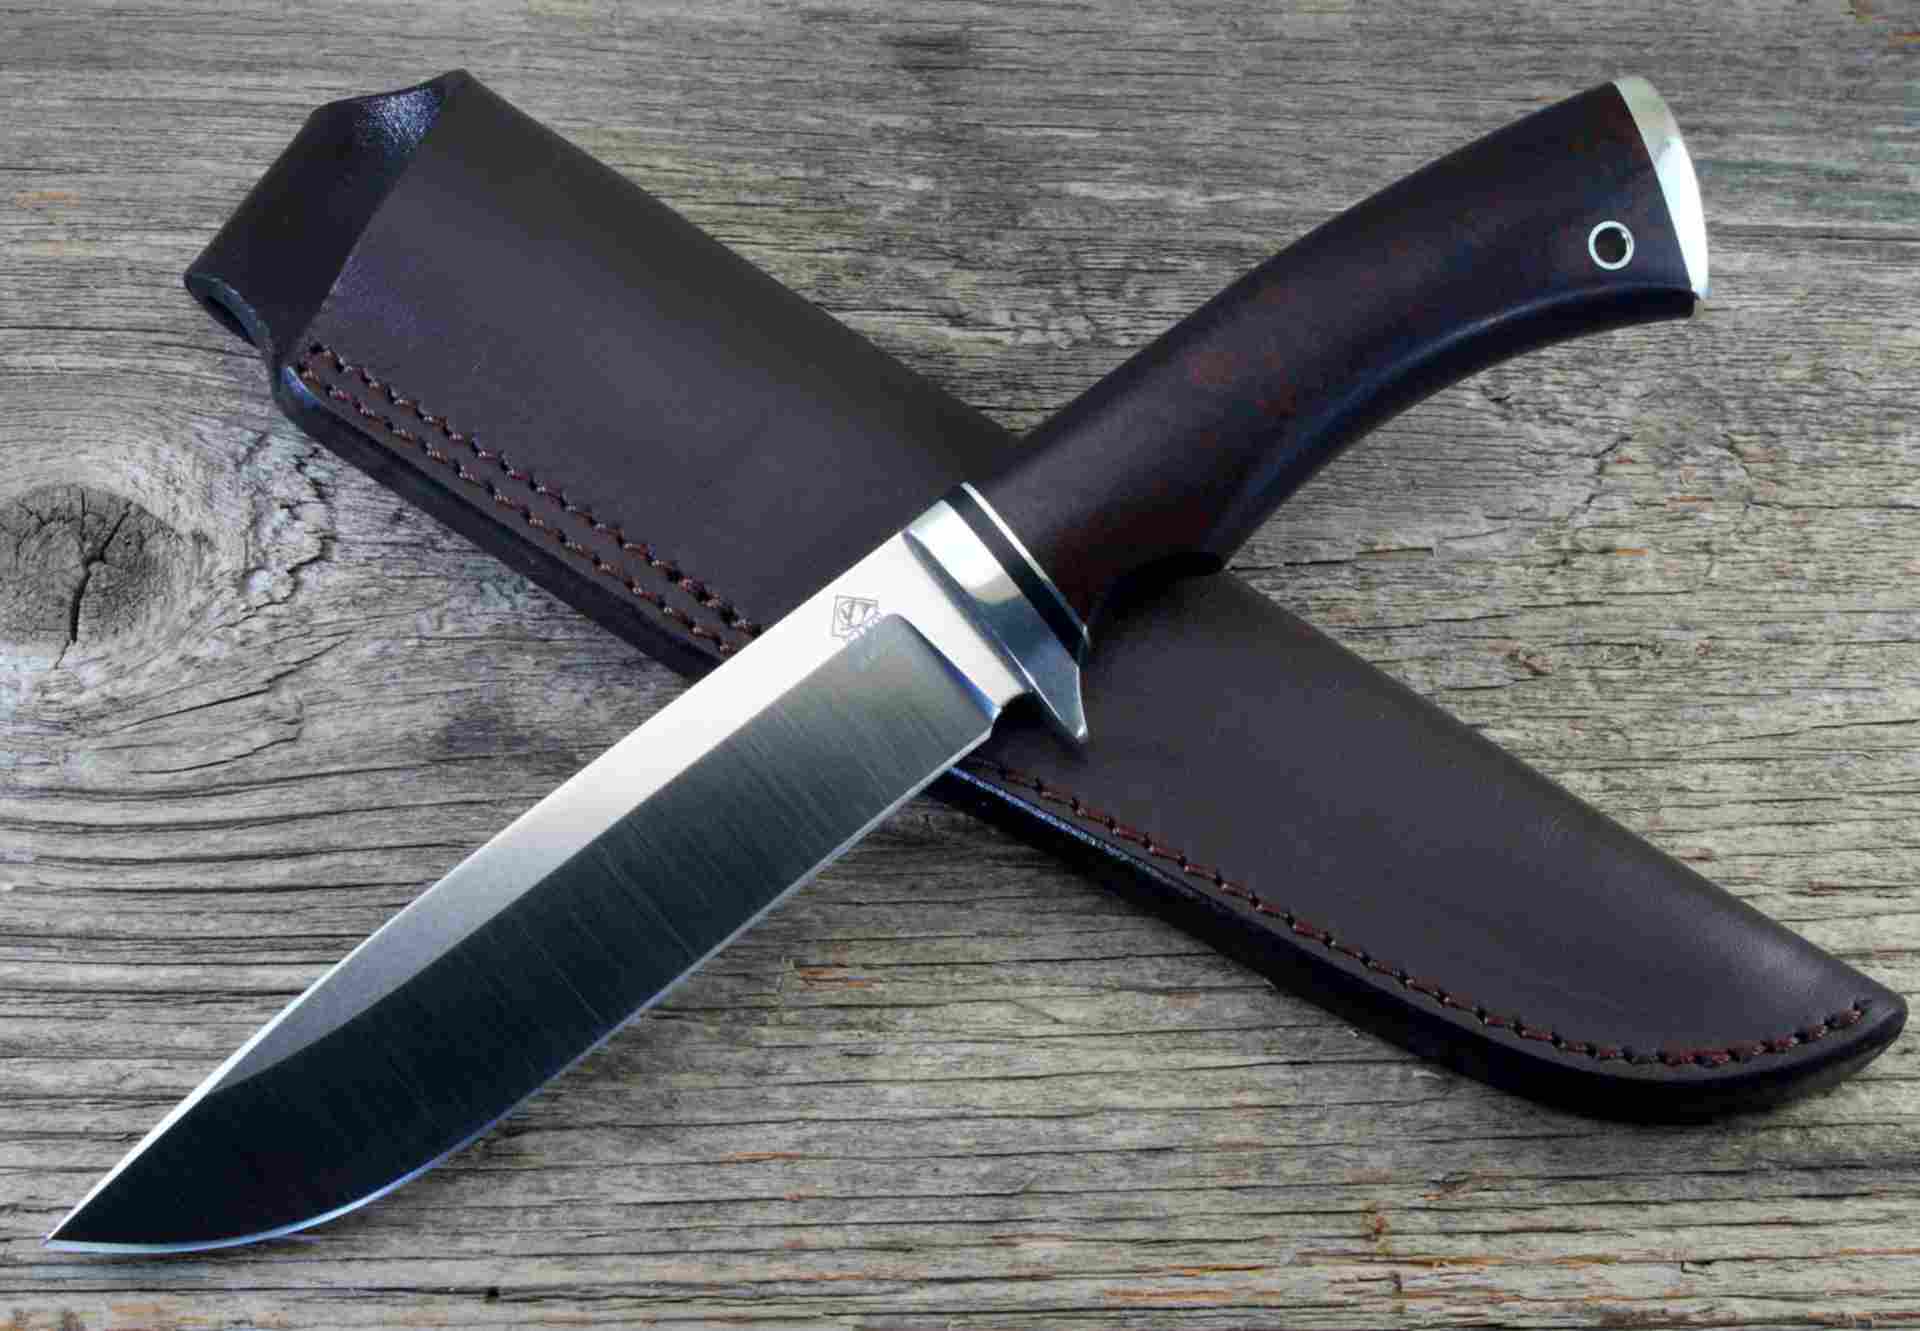 Купить ножевую. Нож охотничий №аг7320. Охотничий нож h234. Нож охотничий е6821. Нож охотничий Воркель.